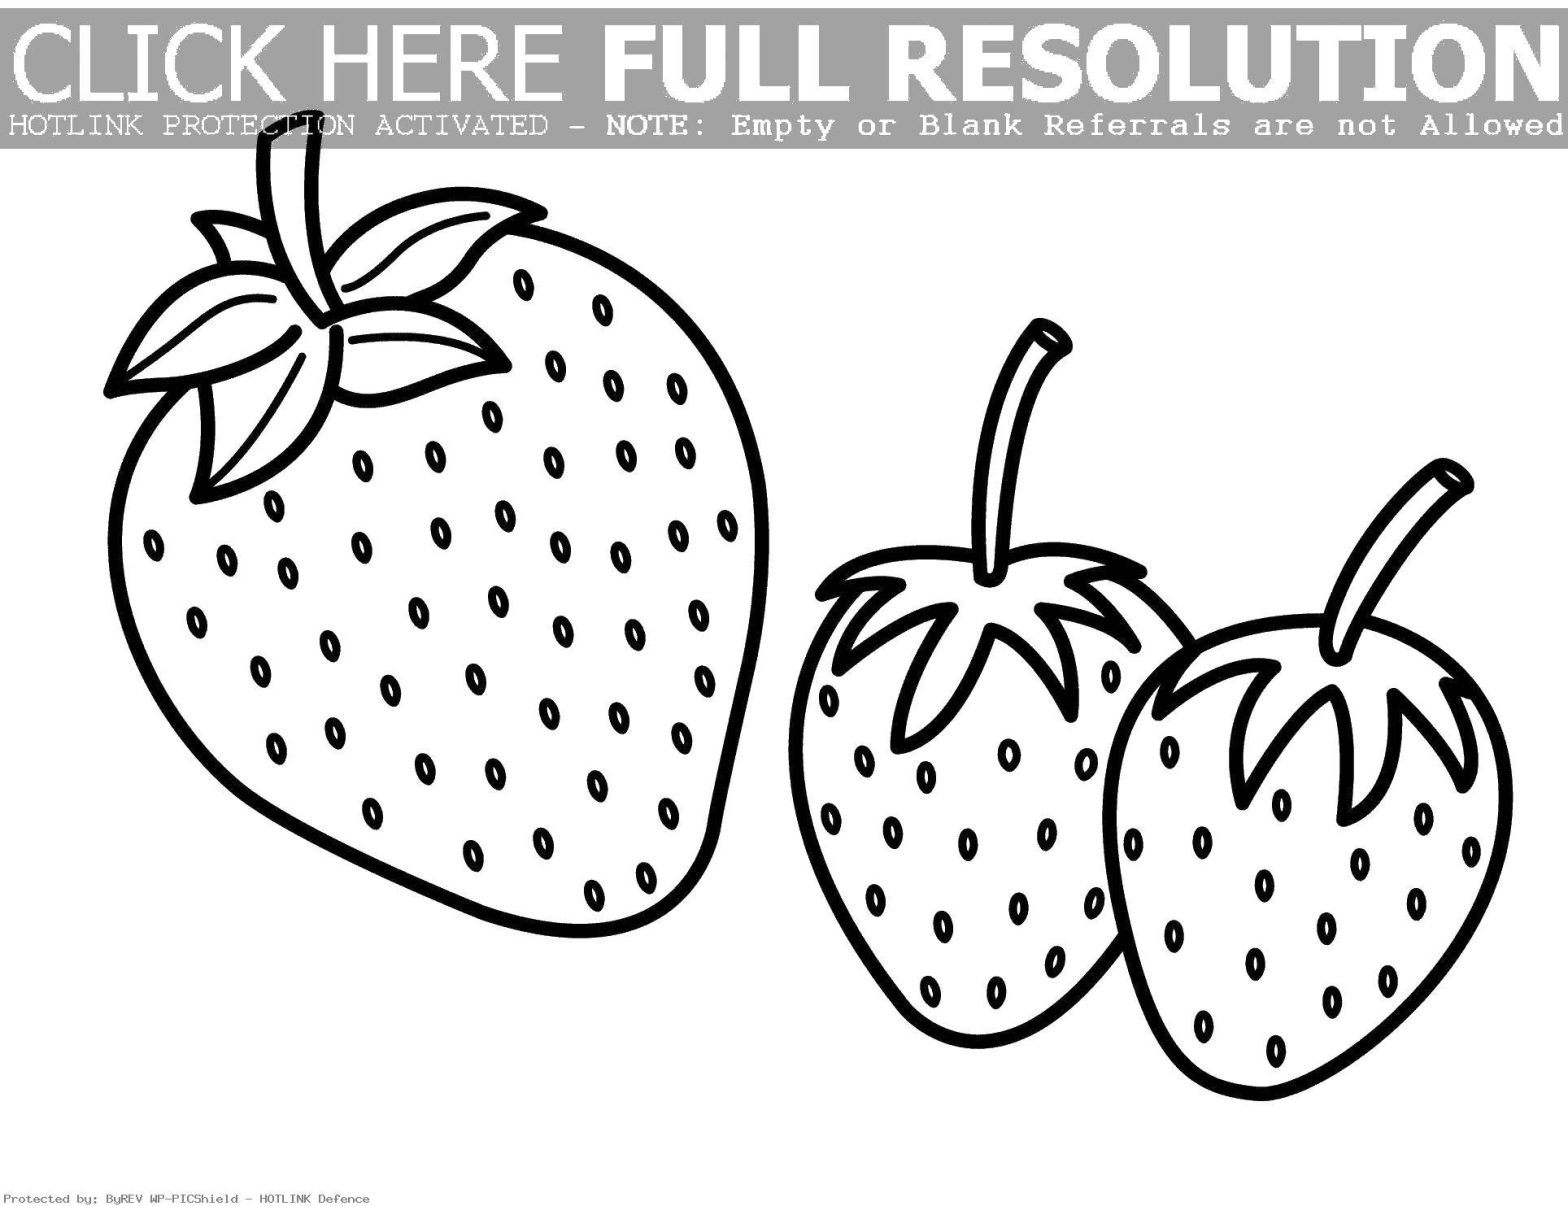 Раскрашенная картинка ягоды клубники (ягоды, клубника)